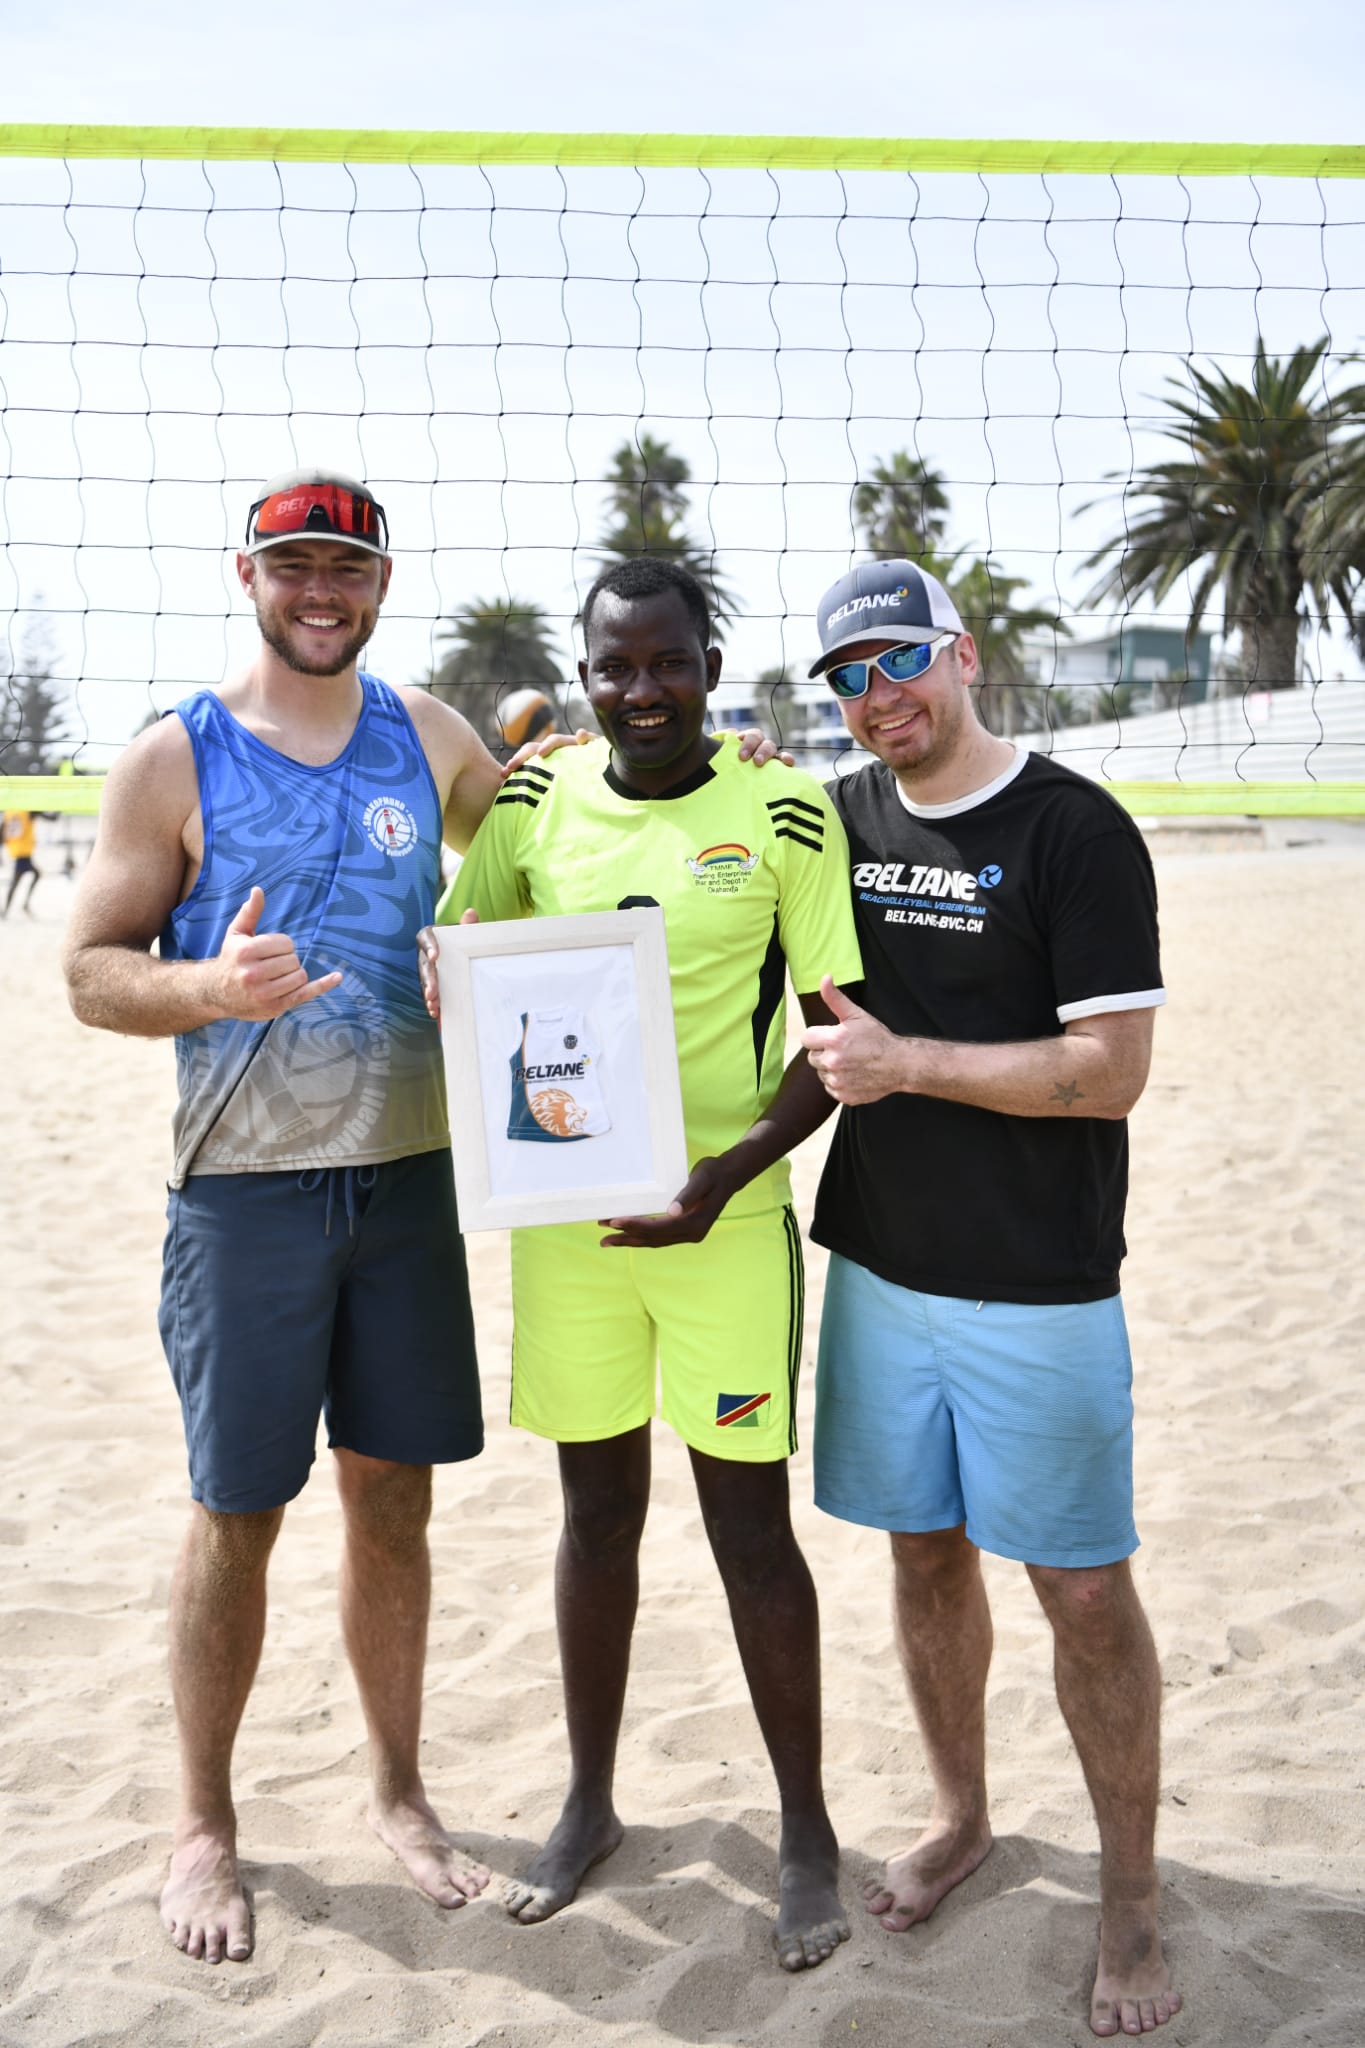 Coach Chumera und seine Teams, die am Swakopmunder Beachvolleyball-Turnier teilnahmen, bedanken sich bei Beltane mit einem Afrocat-Shirt. Wir waren (und sind noch immer) sprachlos über diese Dankbarkeit!